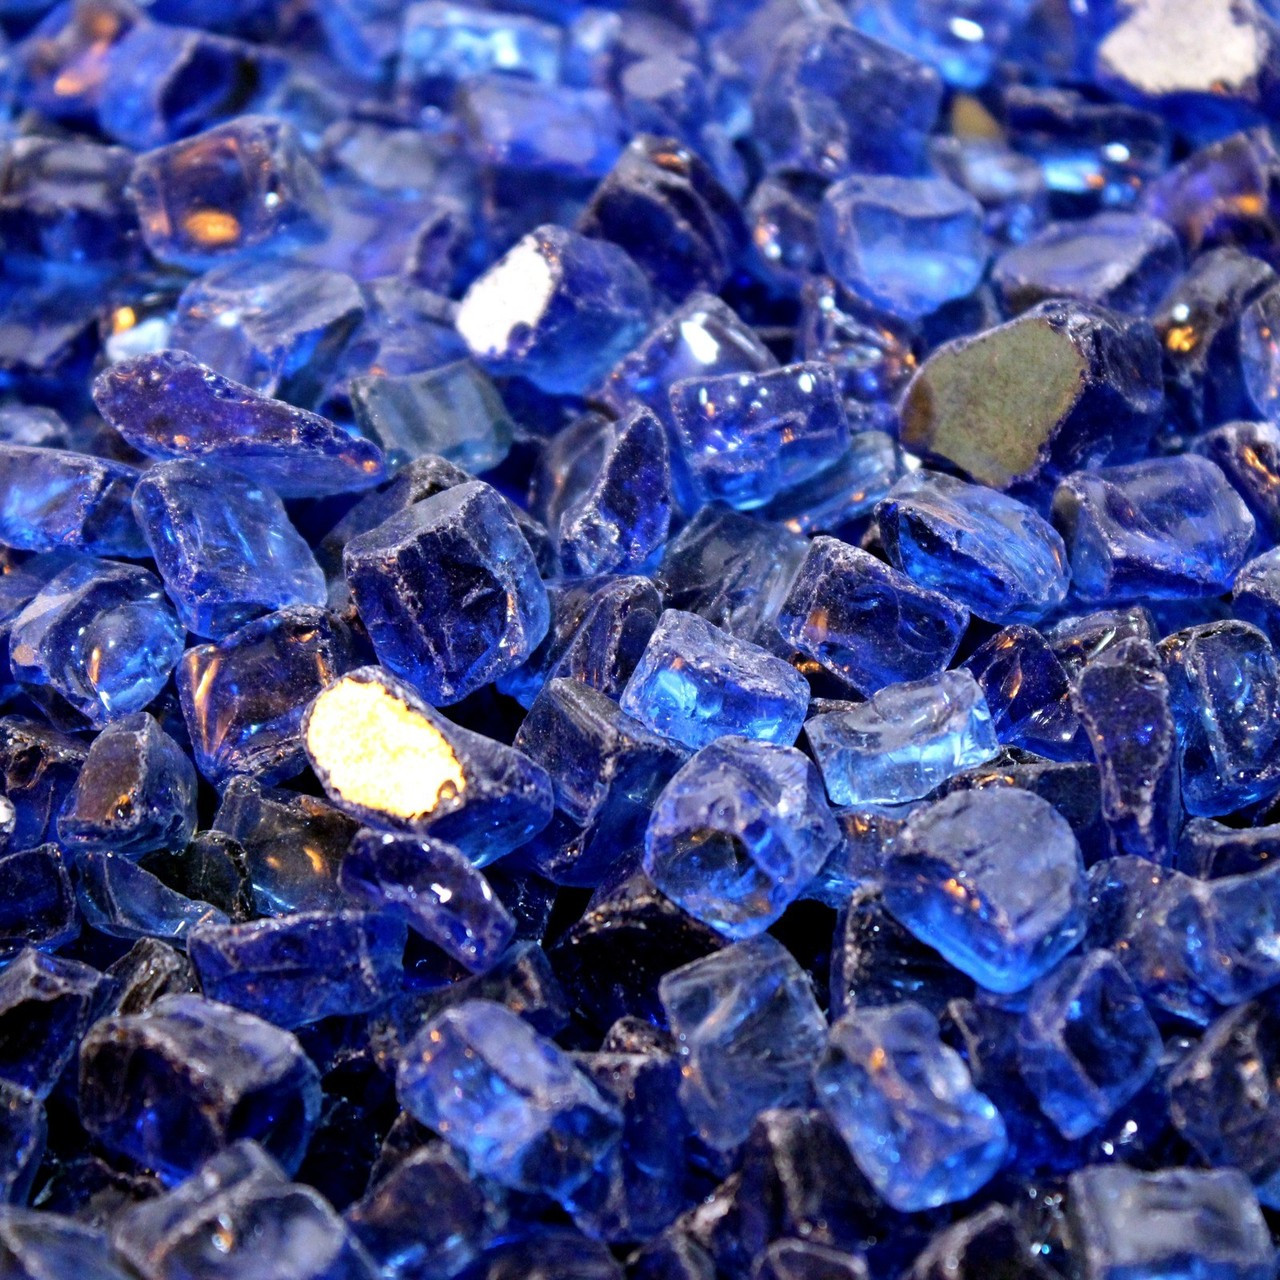 10 LBS 1/4" Cobalt Blue Reflective Fireglass Fireplace Glass Fire Pit Crystals 